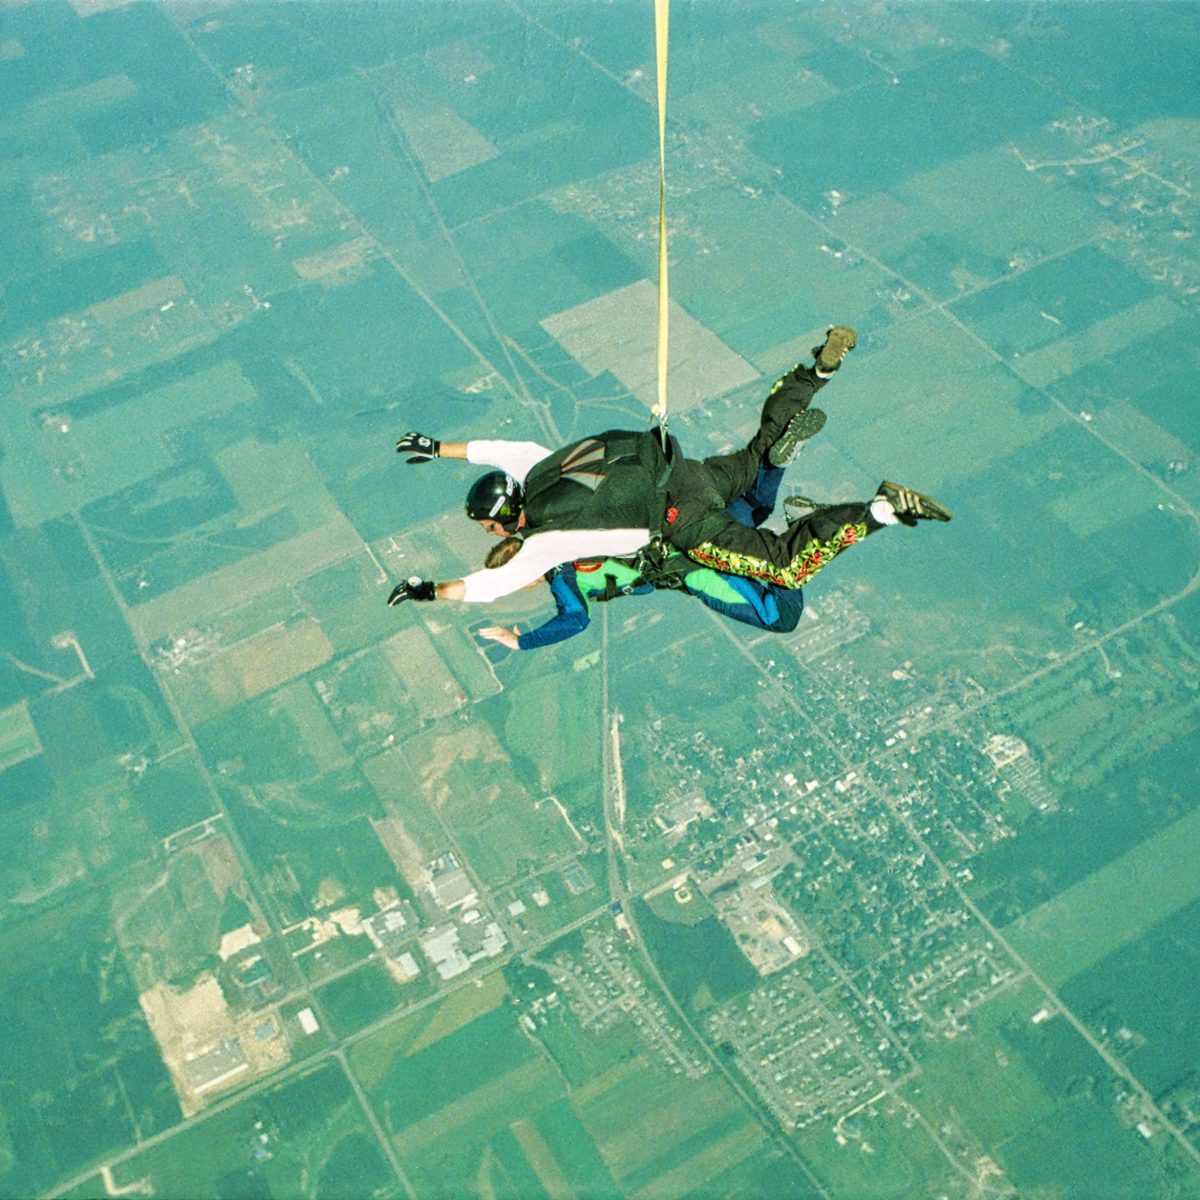 skydiving injuries